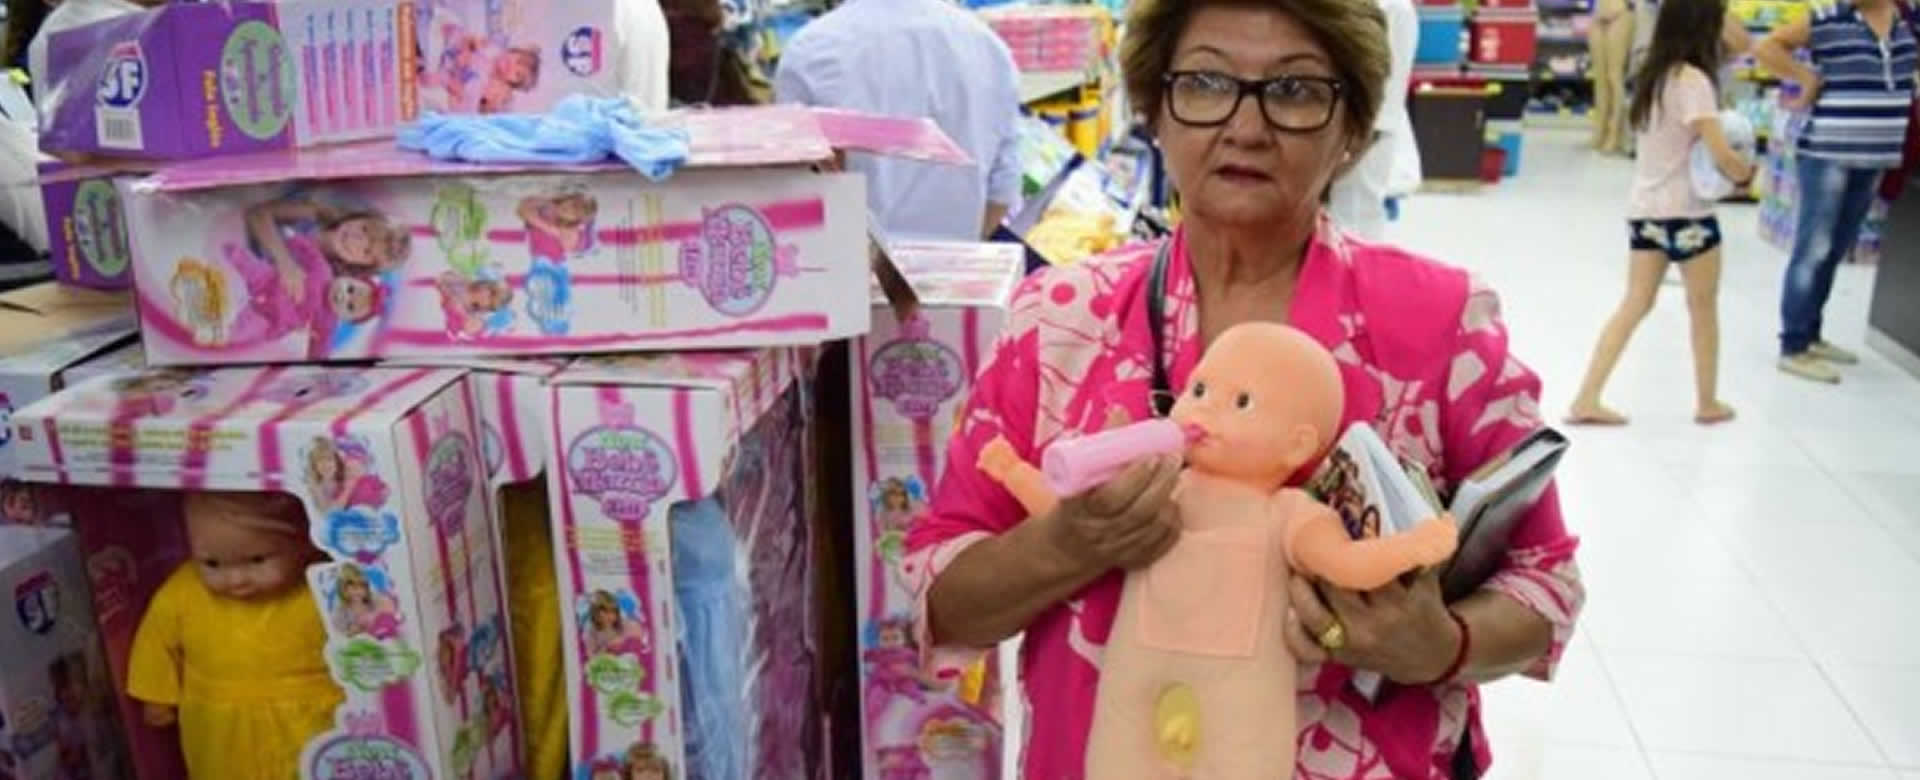 Cierran una tienda que vendía muñecas transexuales en Paraguay